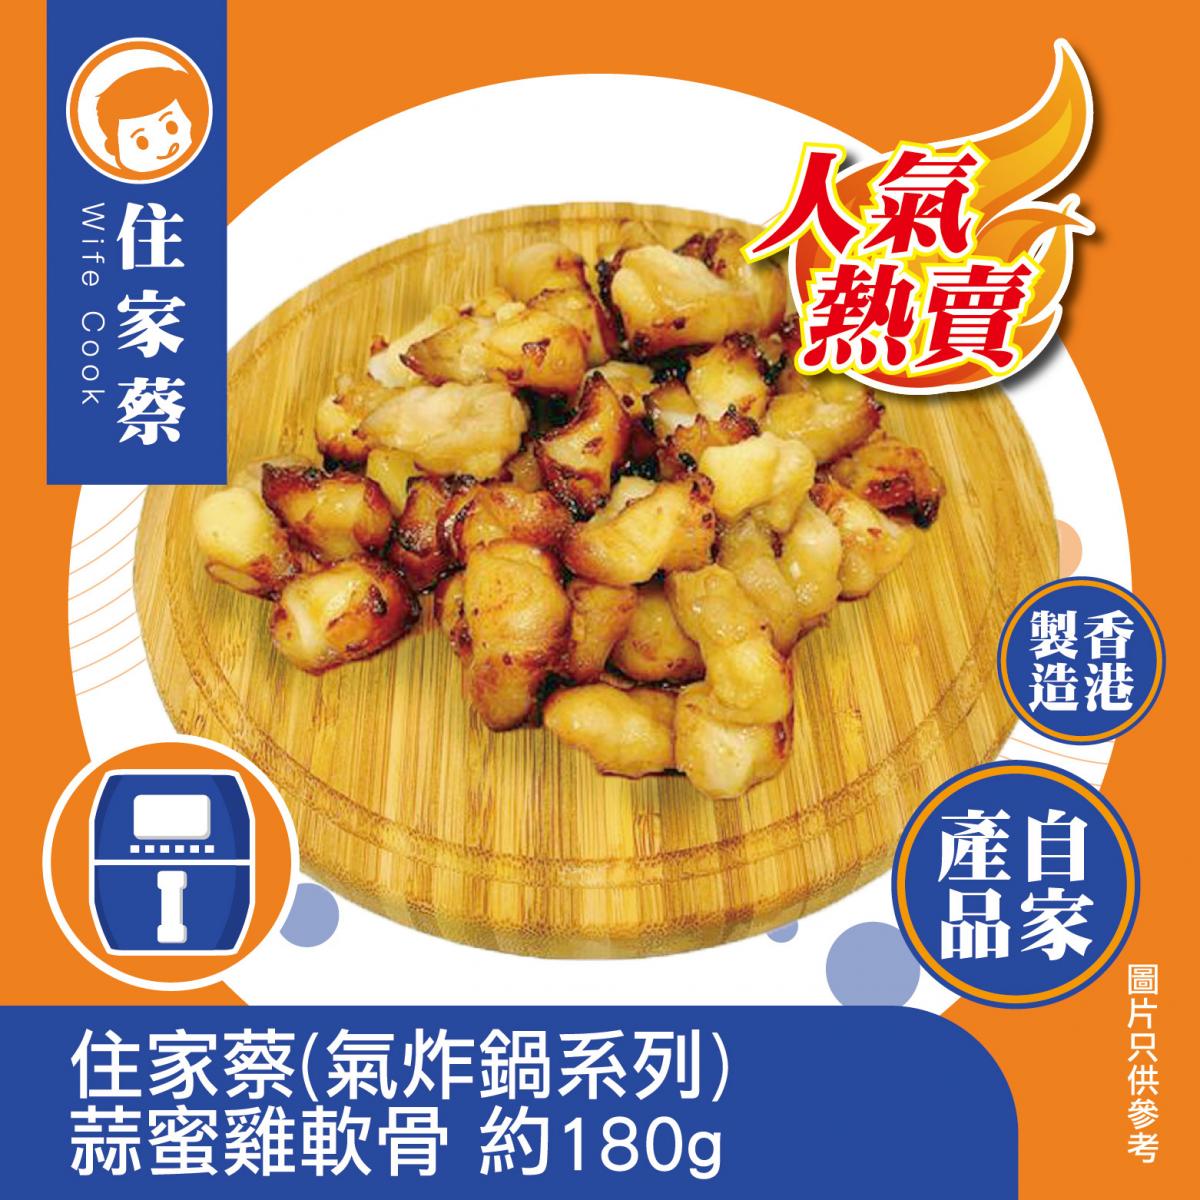 (Air fryer)-Chicken Cartilages with Garlic & Honey(forzen-18°C)蒜蜜雞軟骨